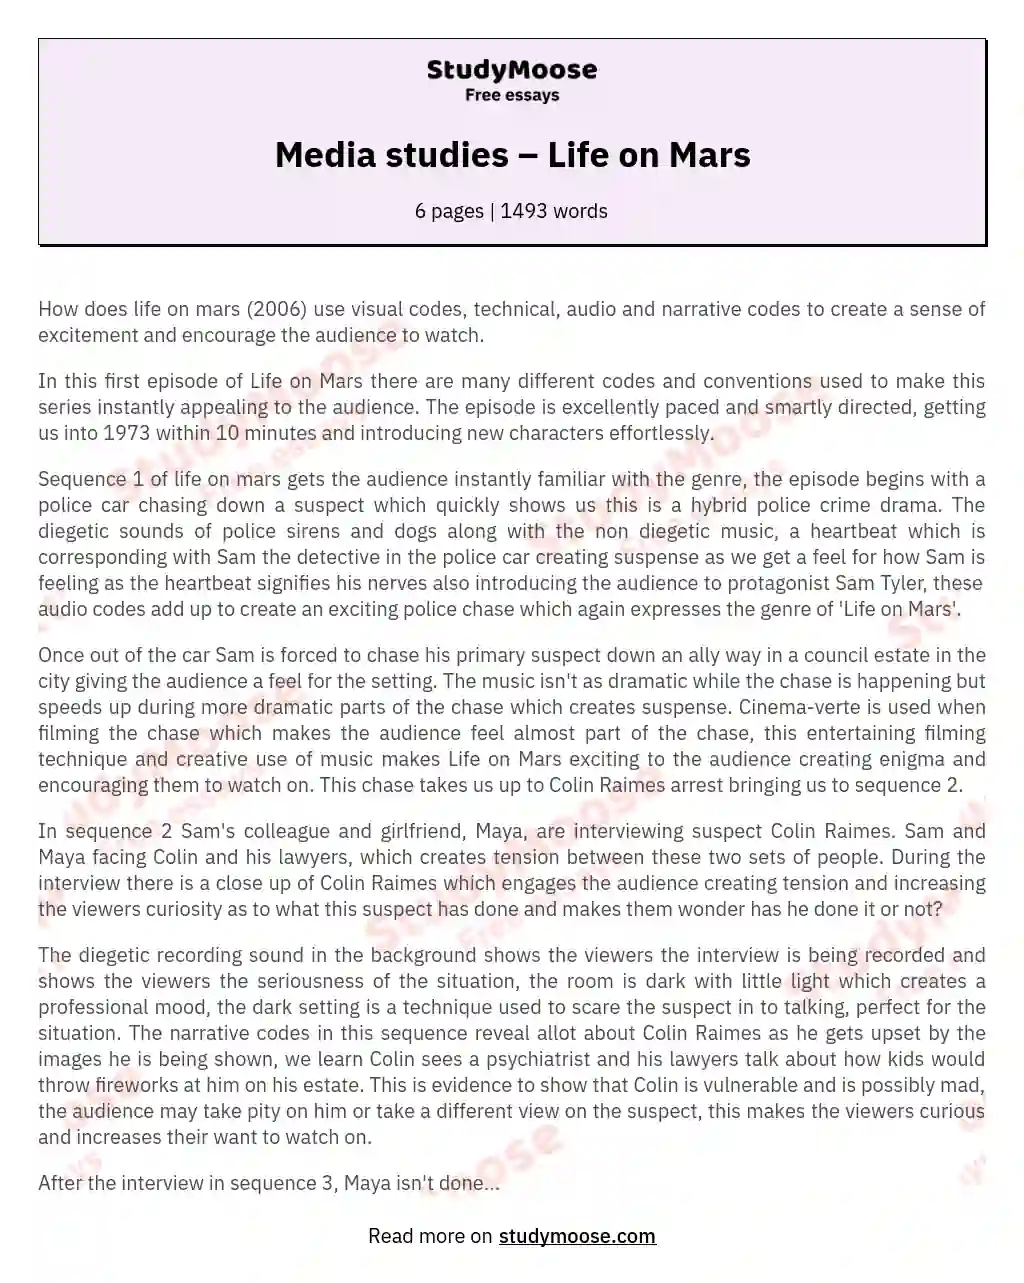 Media studies – Life on Mars essay